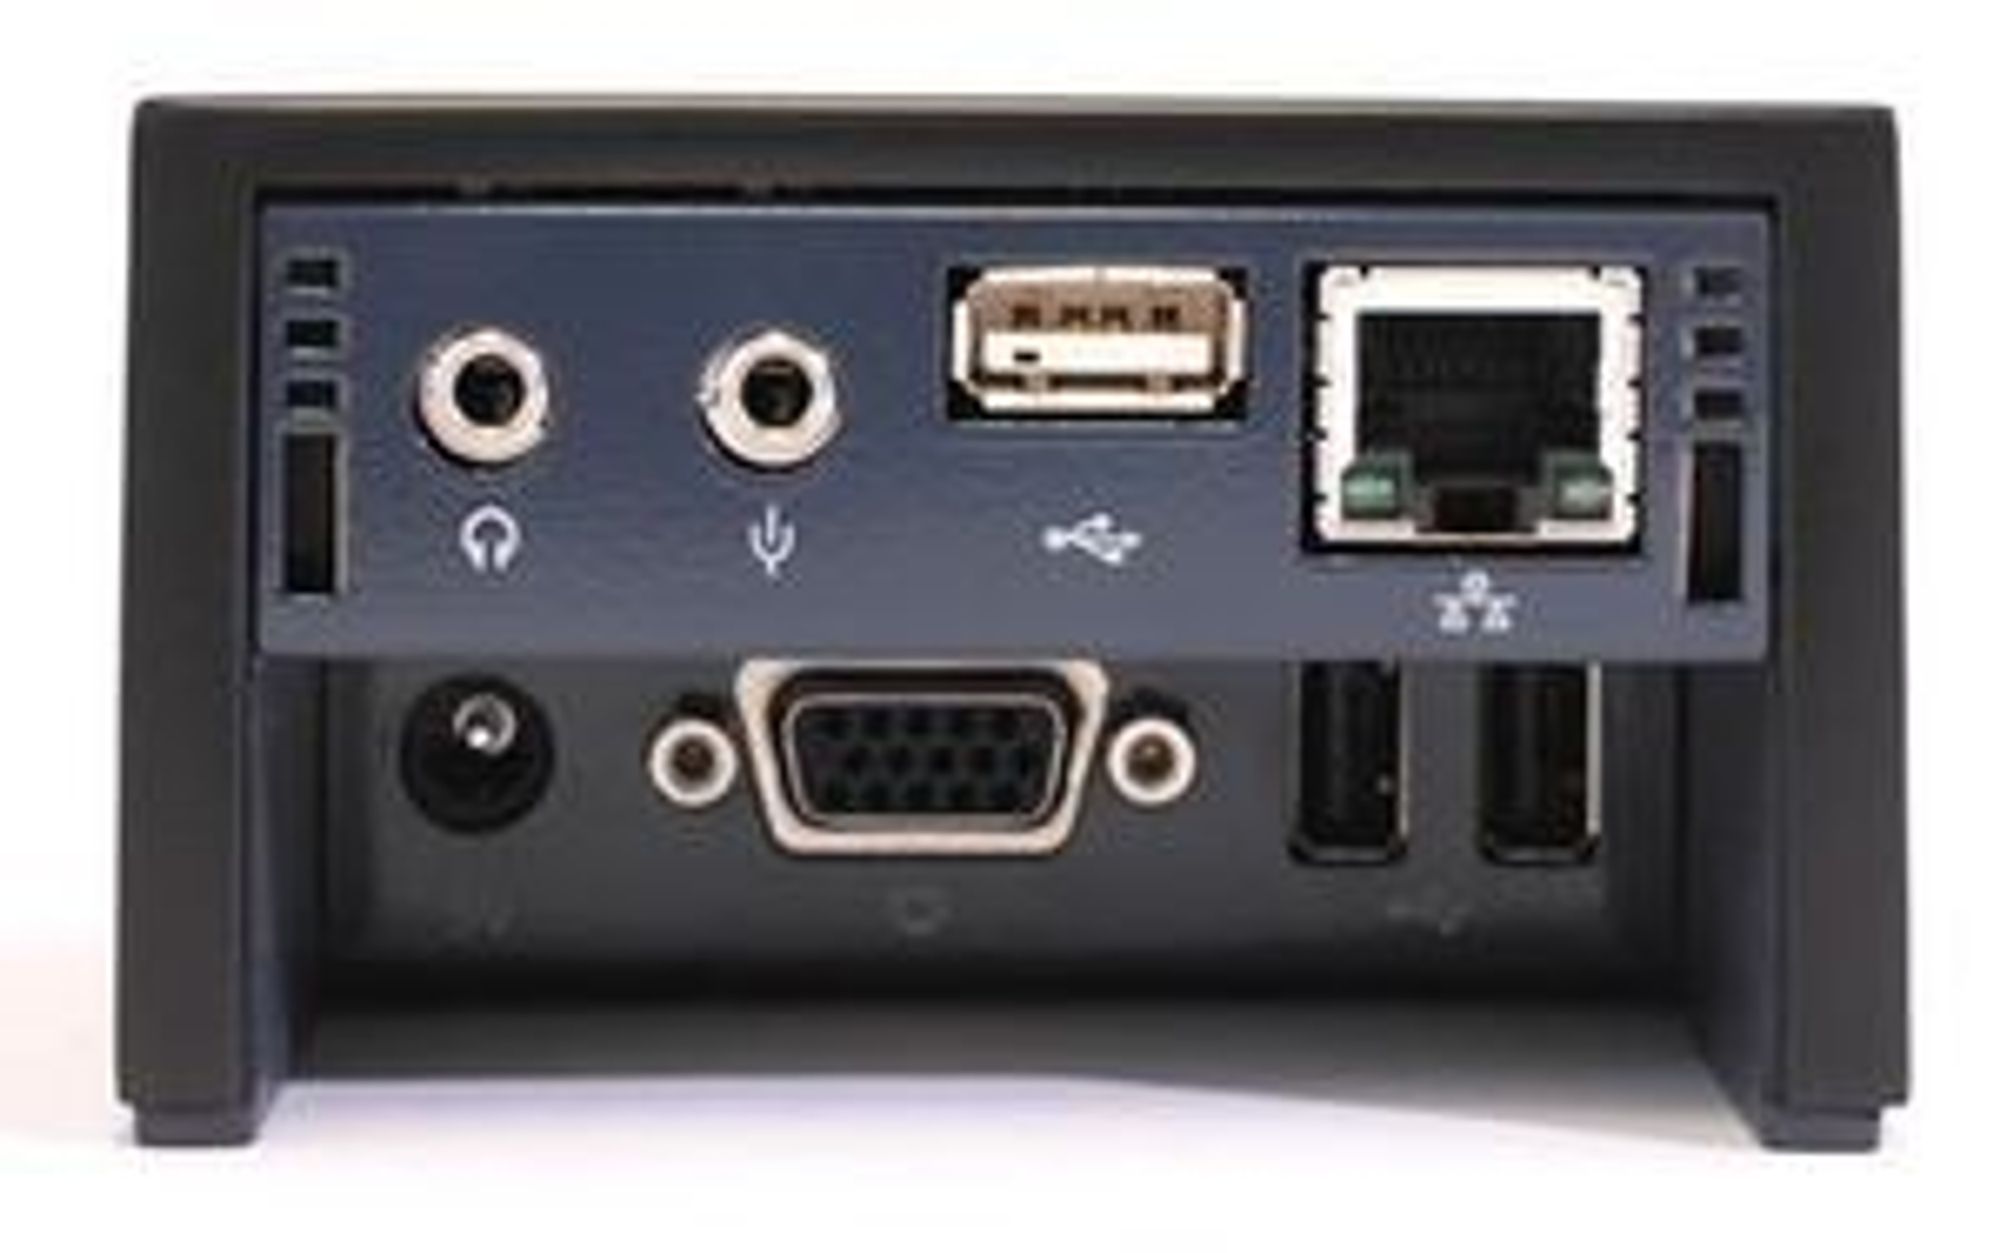 Baksiden til Pano Logics nullklient viser de mulige koplingene: Lyd ut (to kanaler), mikrofon, USB 2.0 (den interne USB-huben kan ta opptil fire utganger), Ethernet og skjerm.